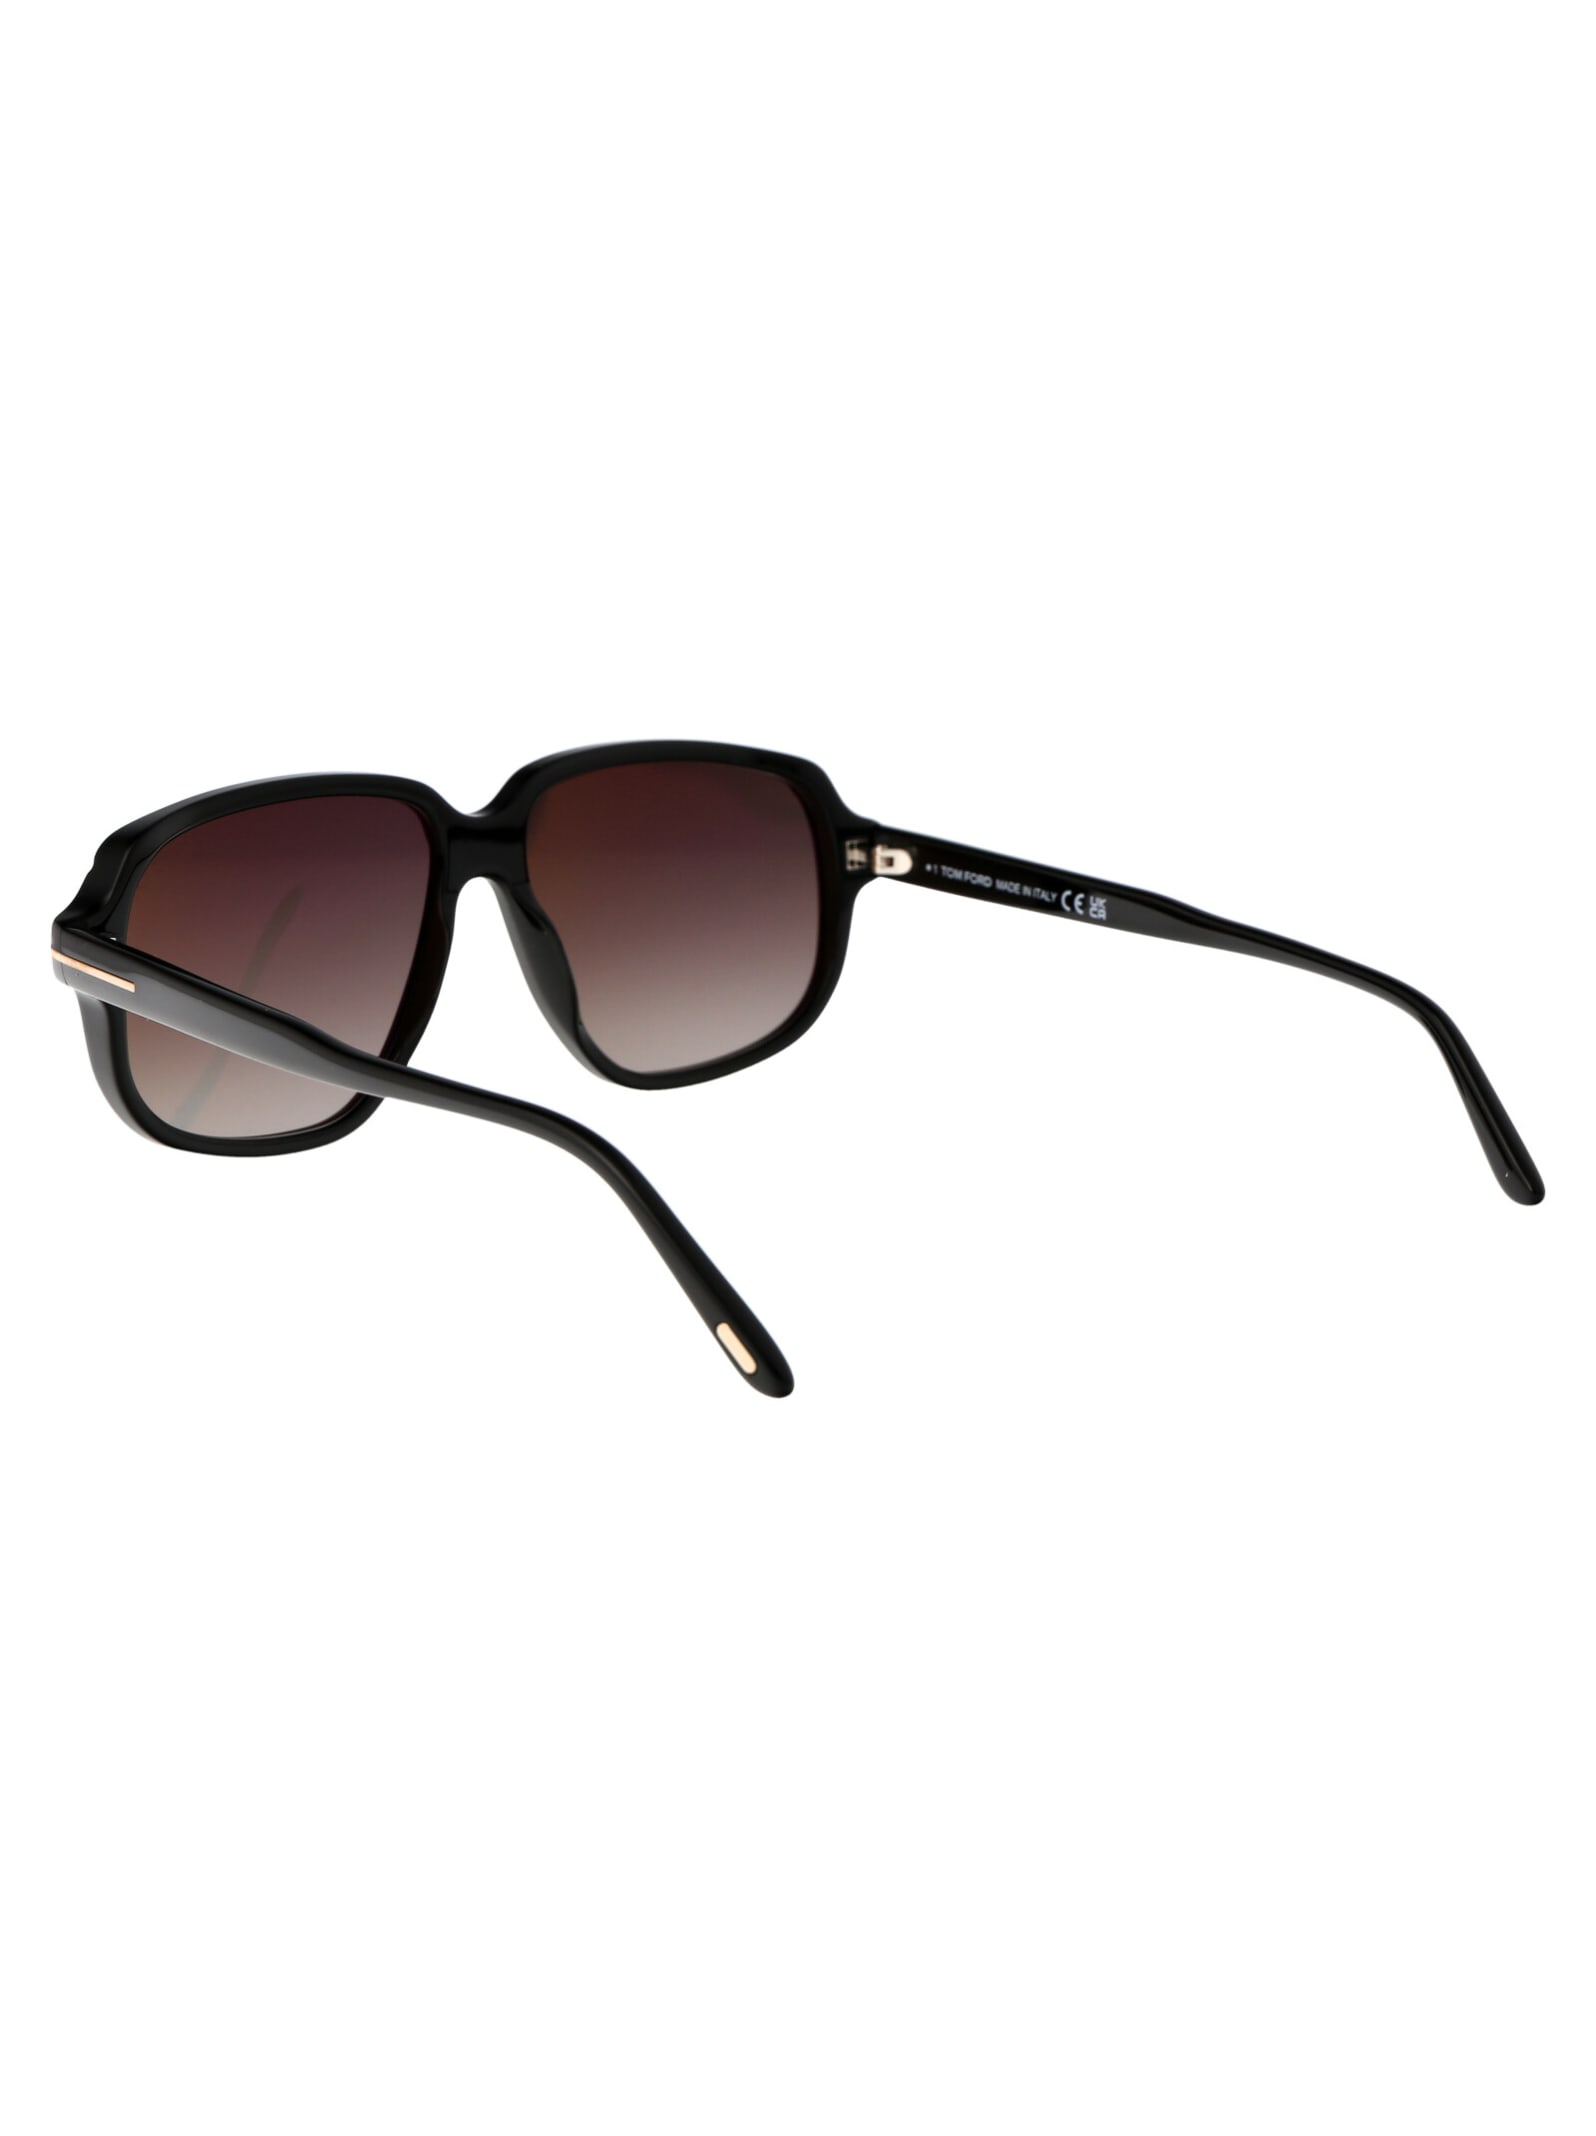 Shop Tom Ford Anton Sunglasses In 01b Nero Lucido / Fumo Grad